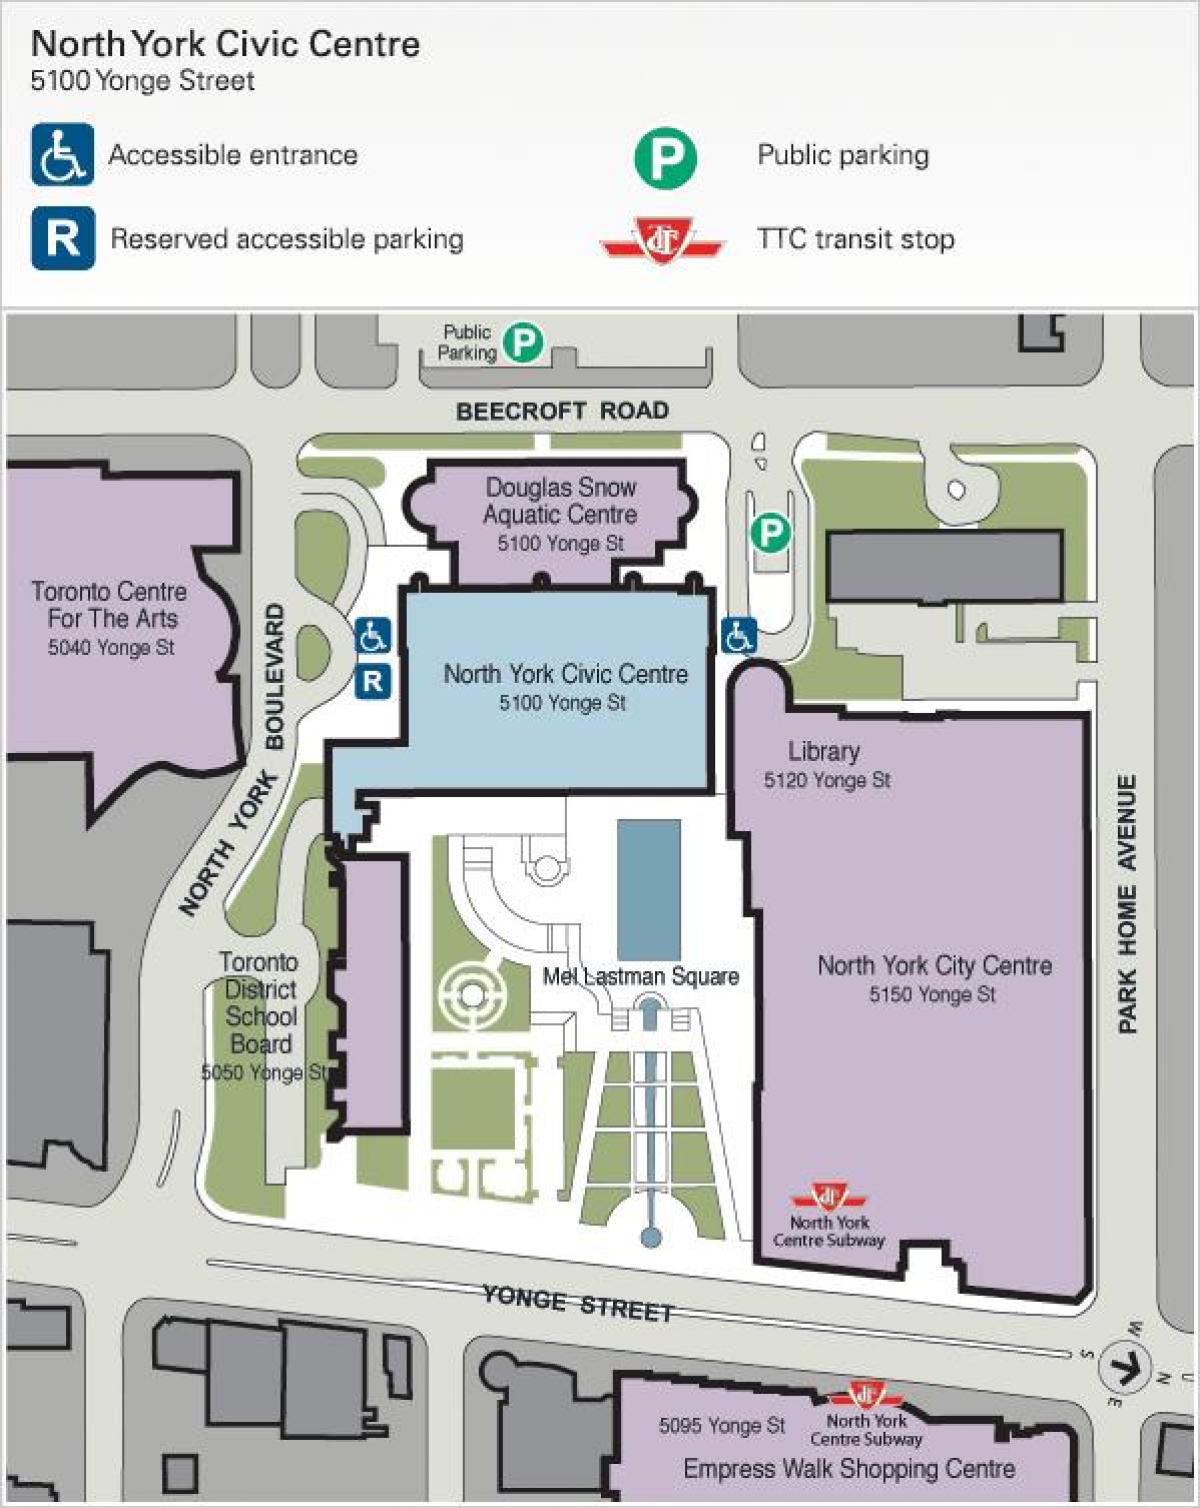 Mapa de Toronto Centre for the Arts estacionamento